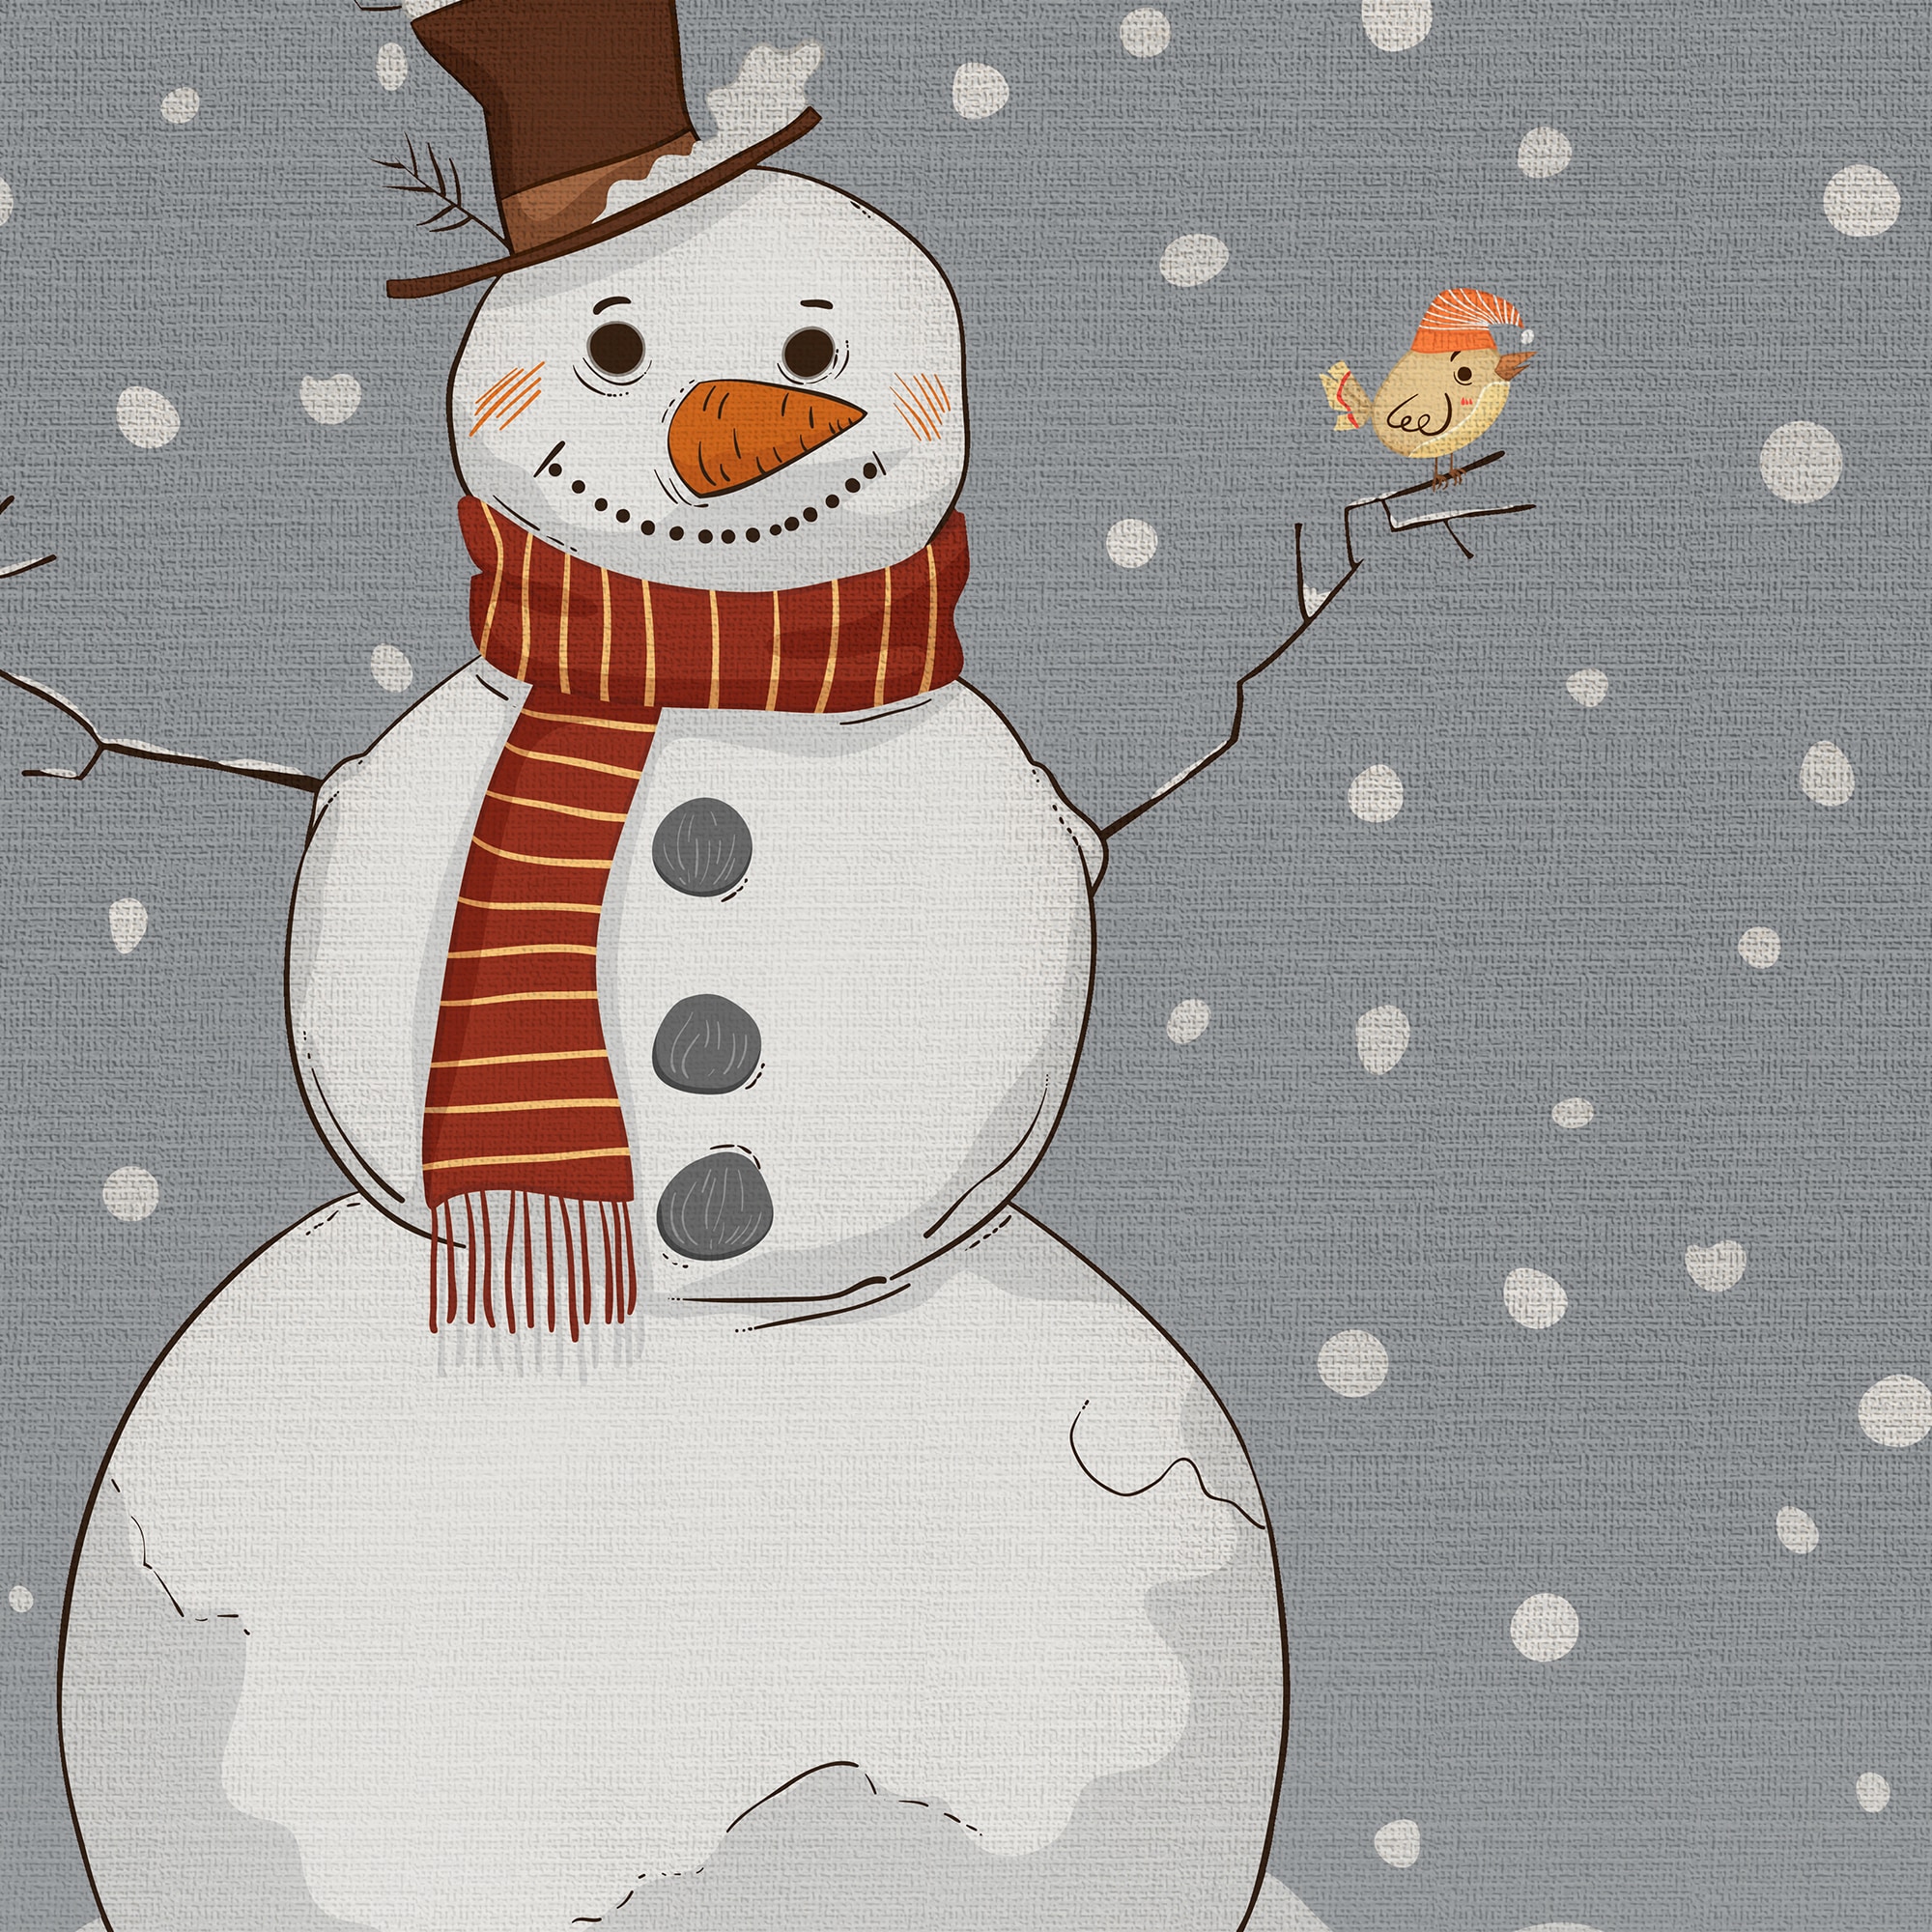 9.5” Foam Snowman Ornament